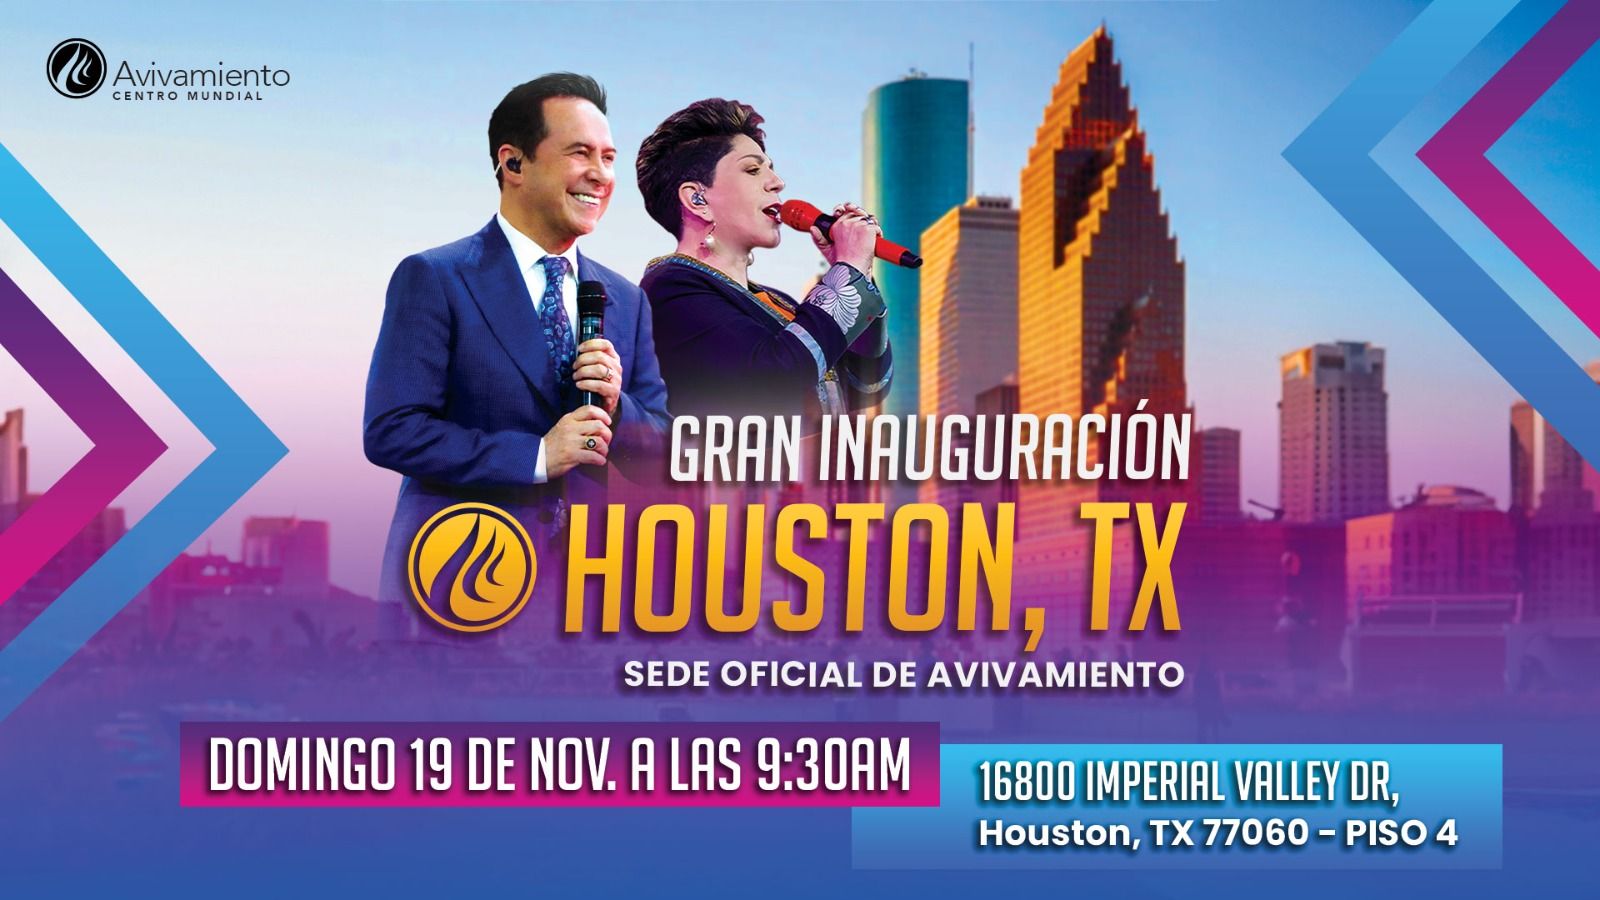 Gran Inauguración Houston, Tx